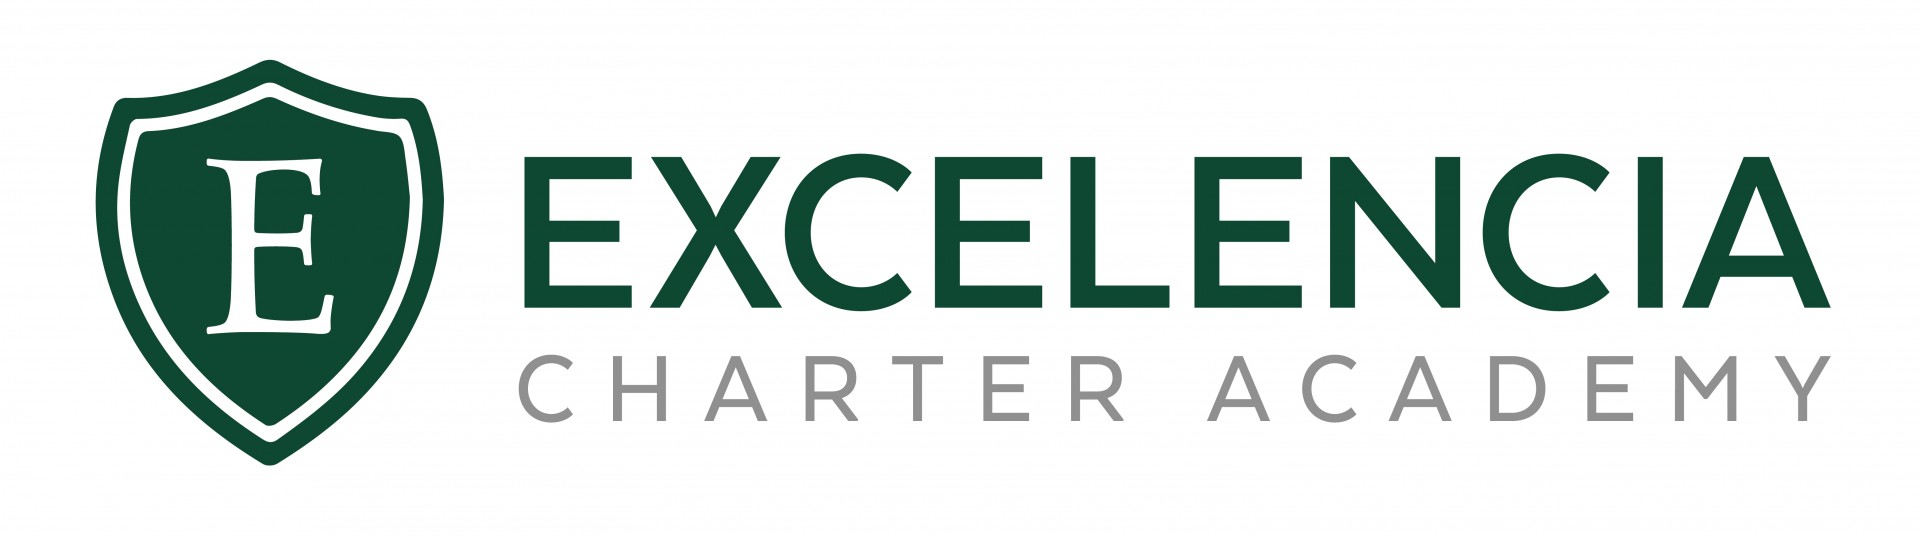 Excelencia Charter Academy Logo